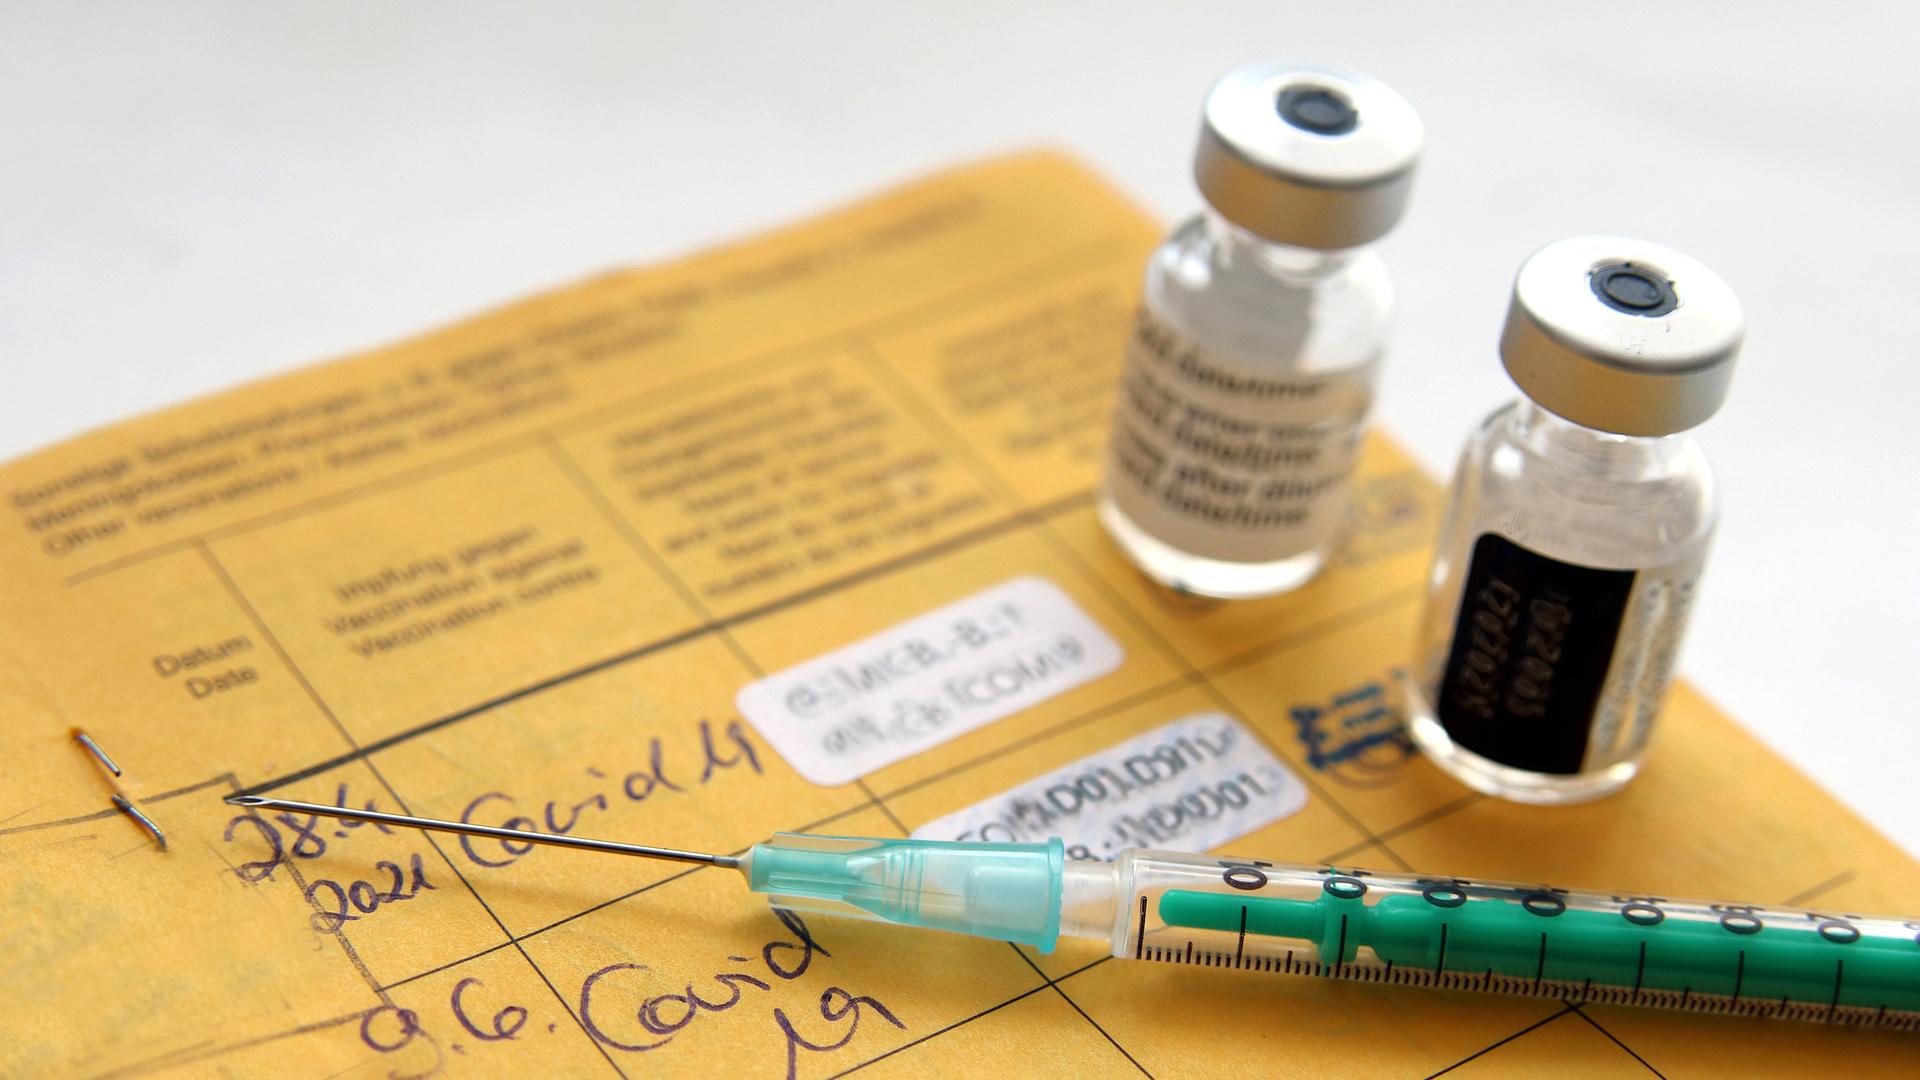 Impfdosen und eine Spritze liegen auf einem gelben Impfausweis.